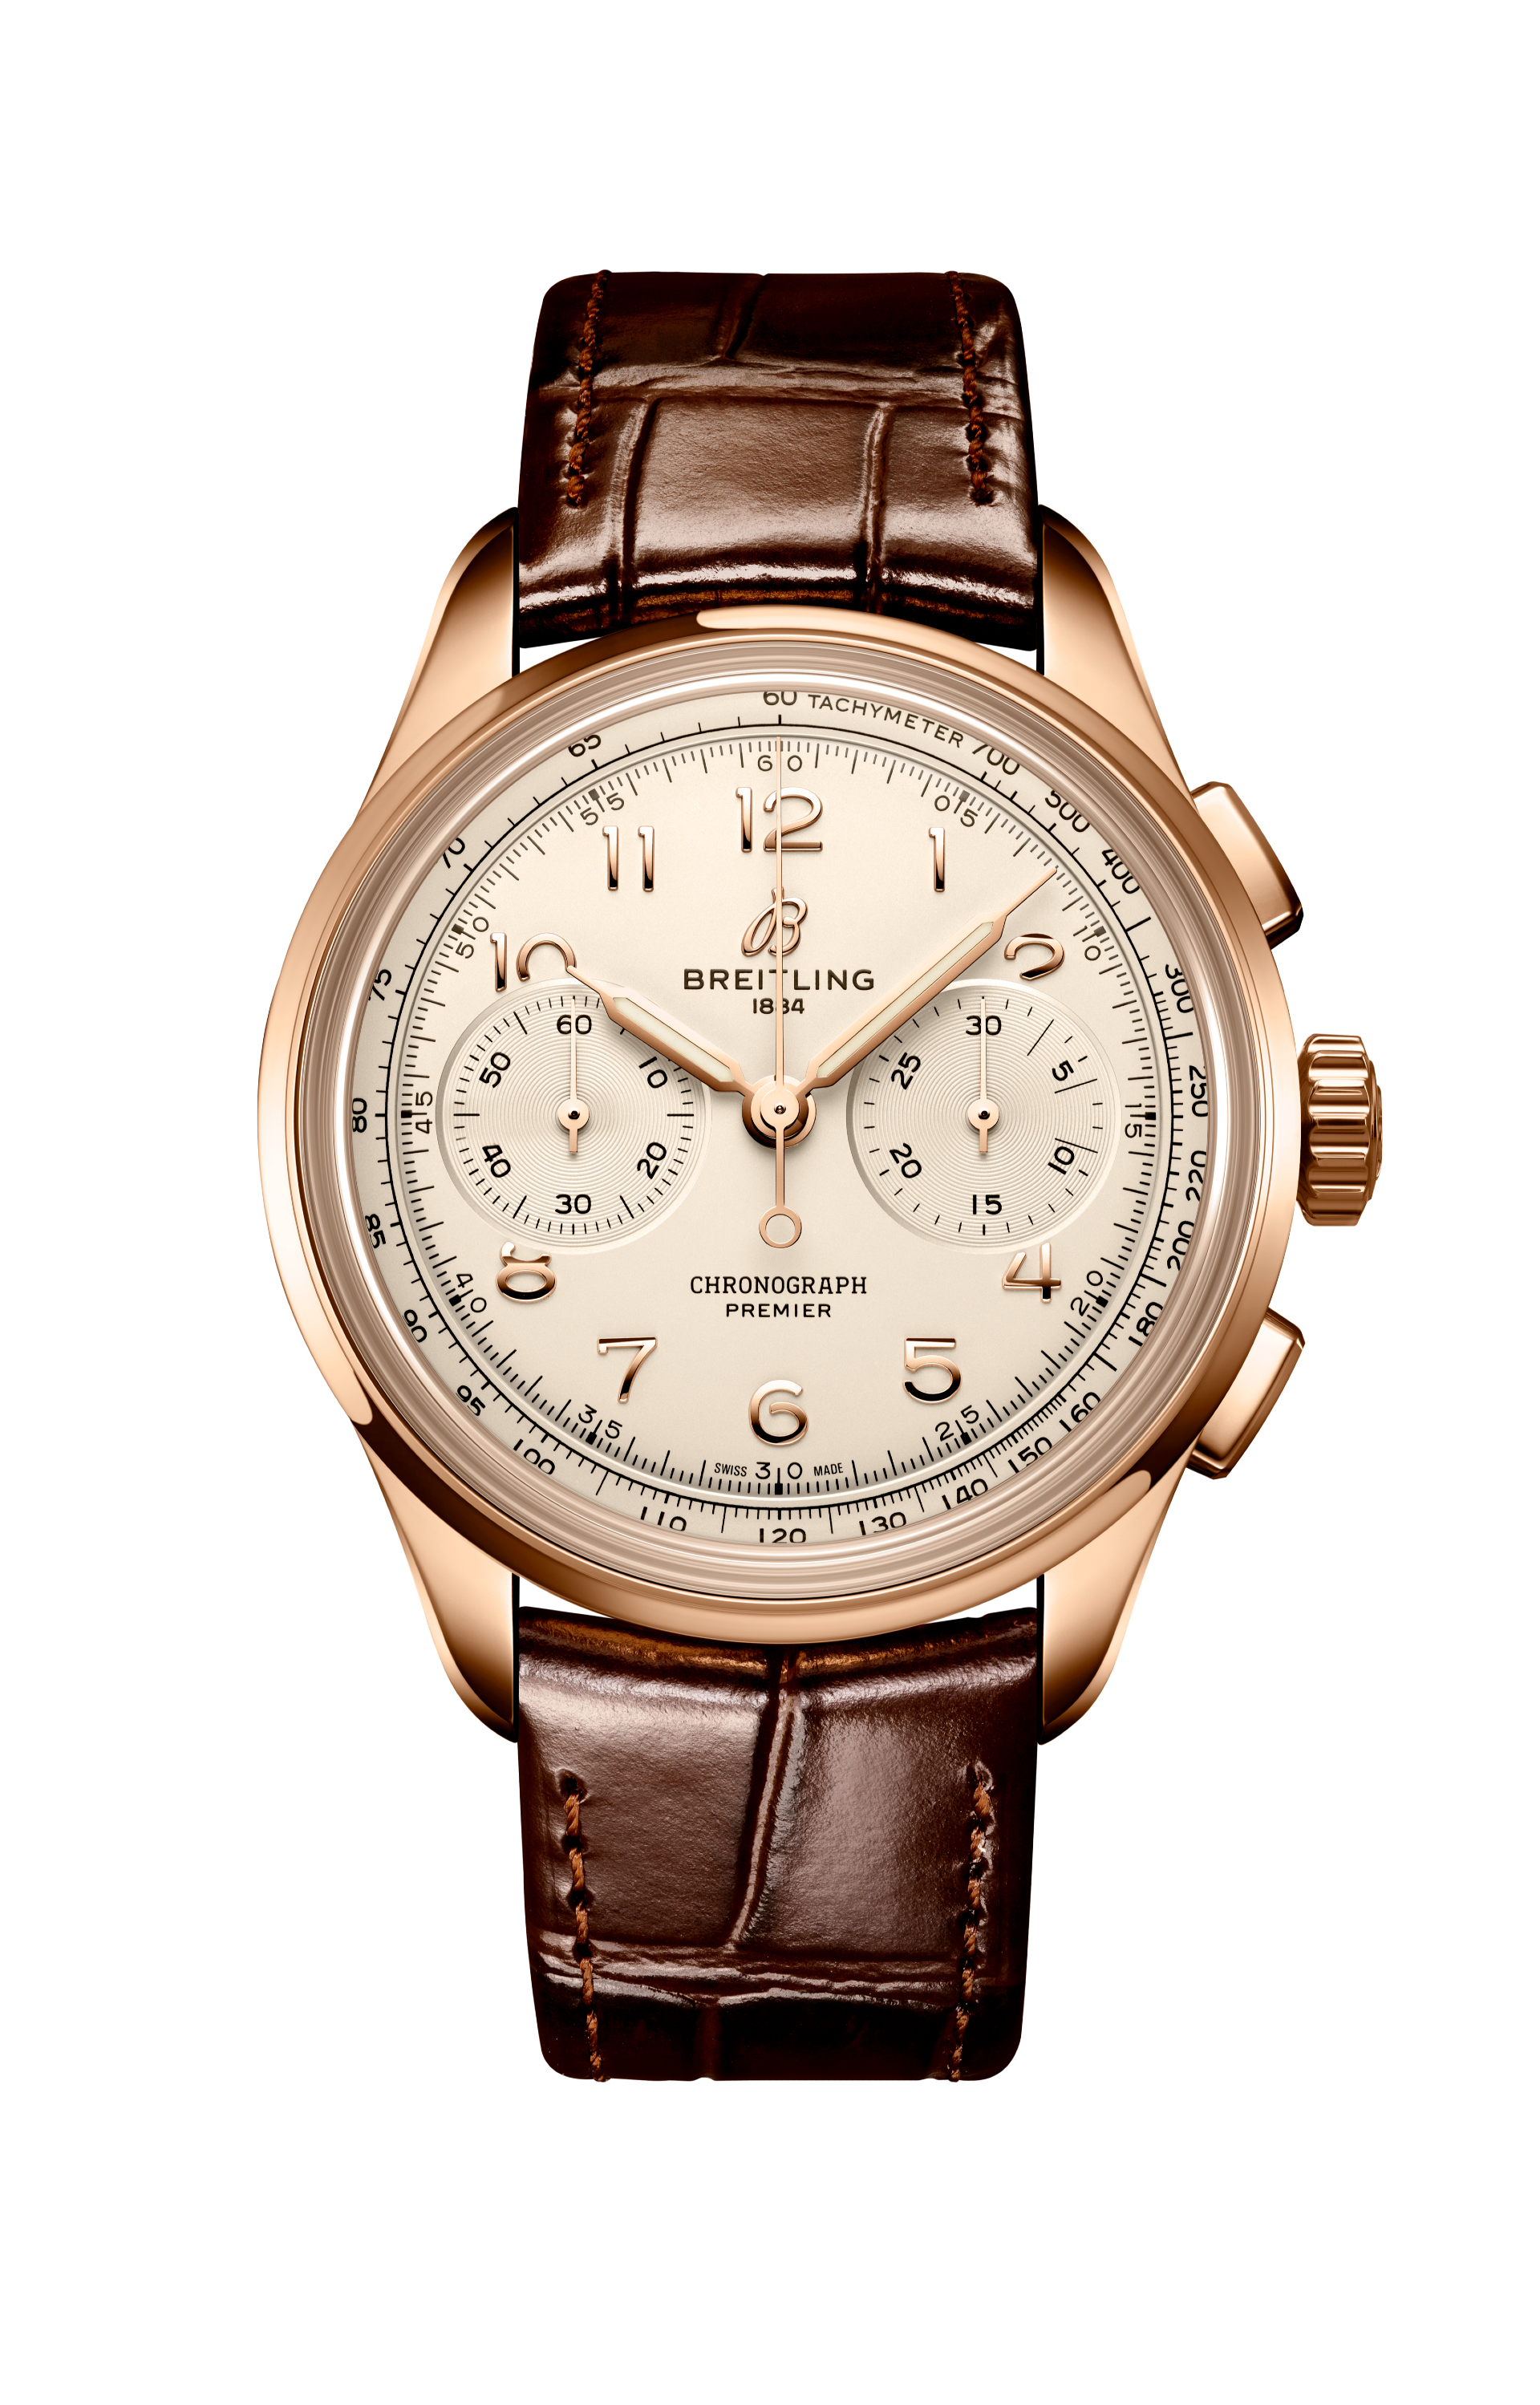 Часы Premier Heritage Chronograph, Breitling